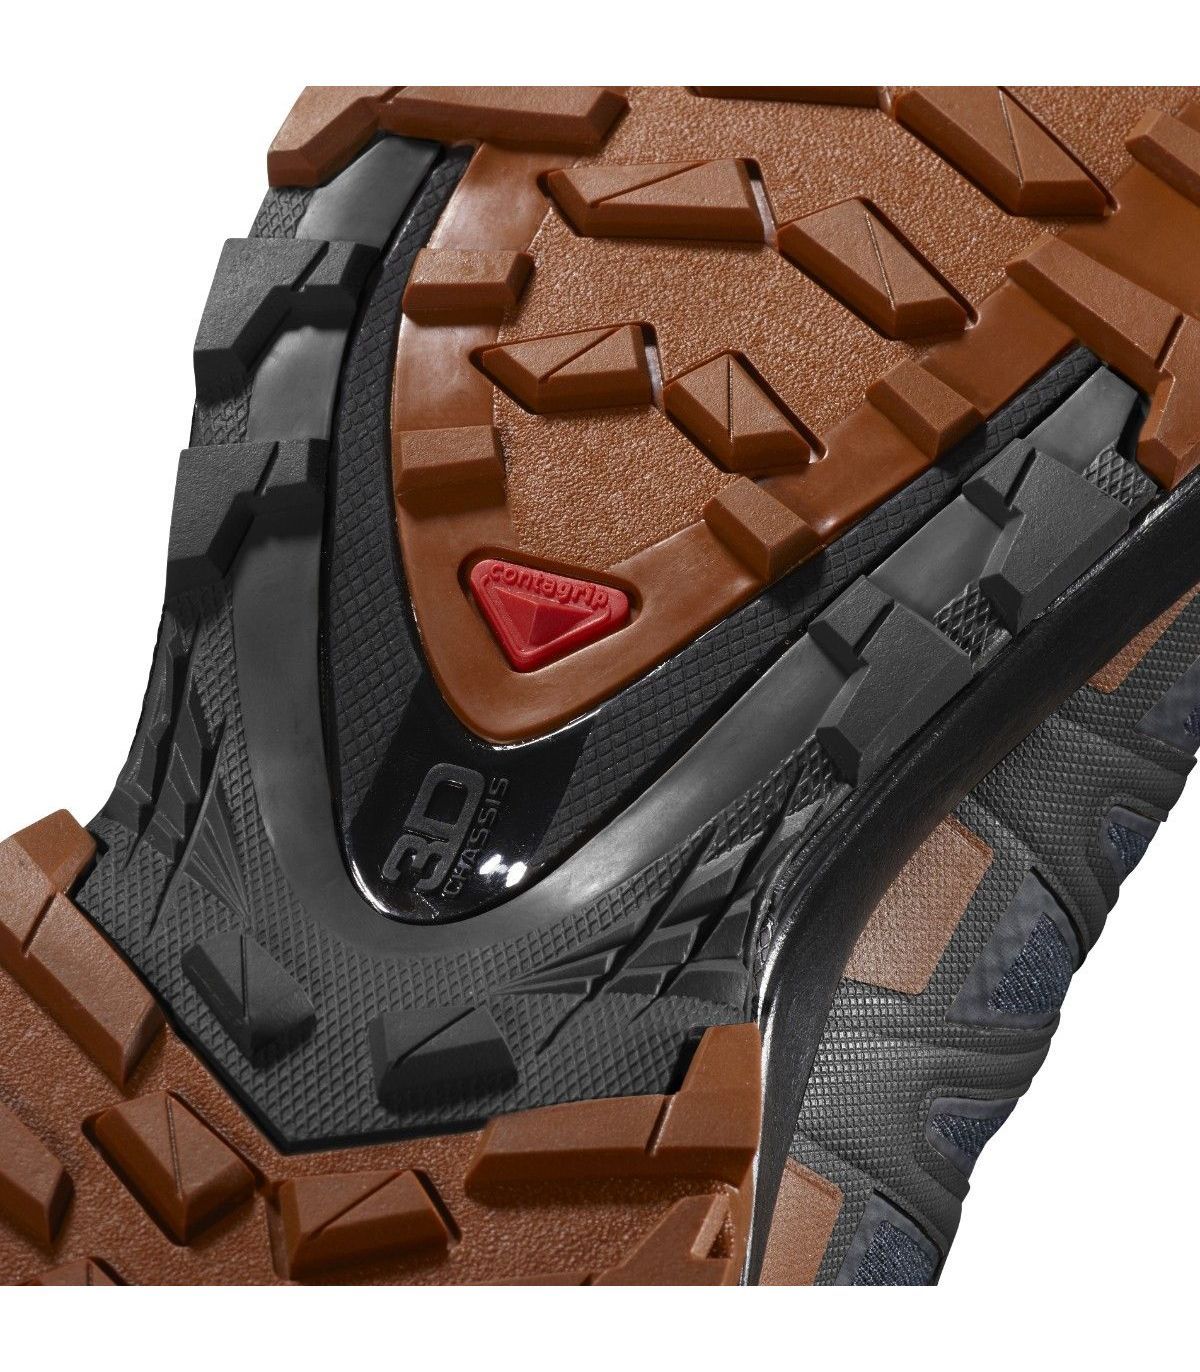 Zapatillas Salomon Xa Pro 3D V8 Ebony. Oferta y Comprar